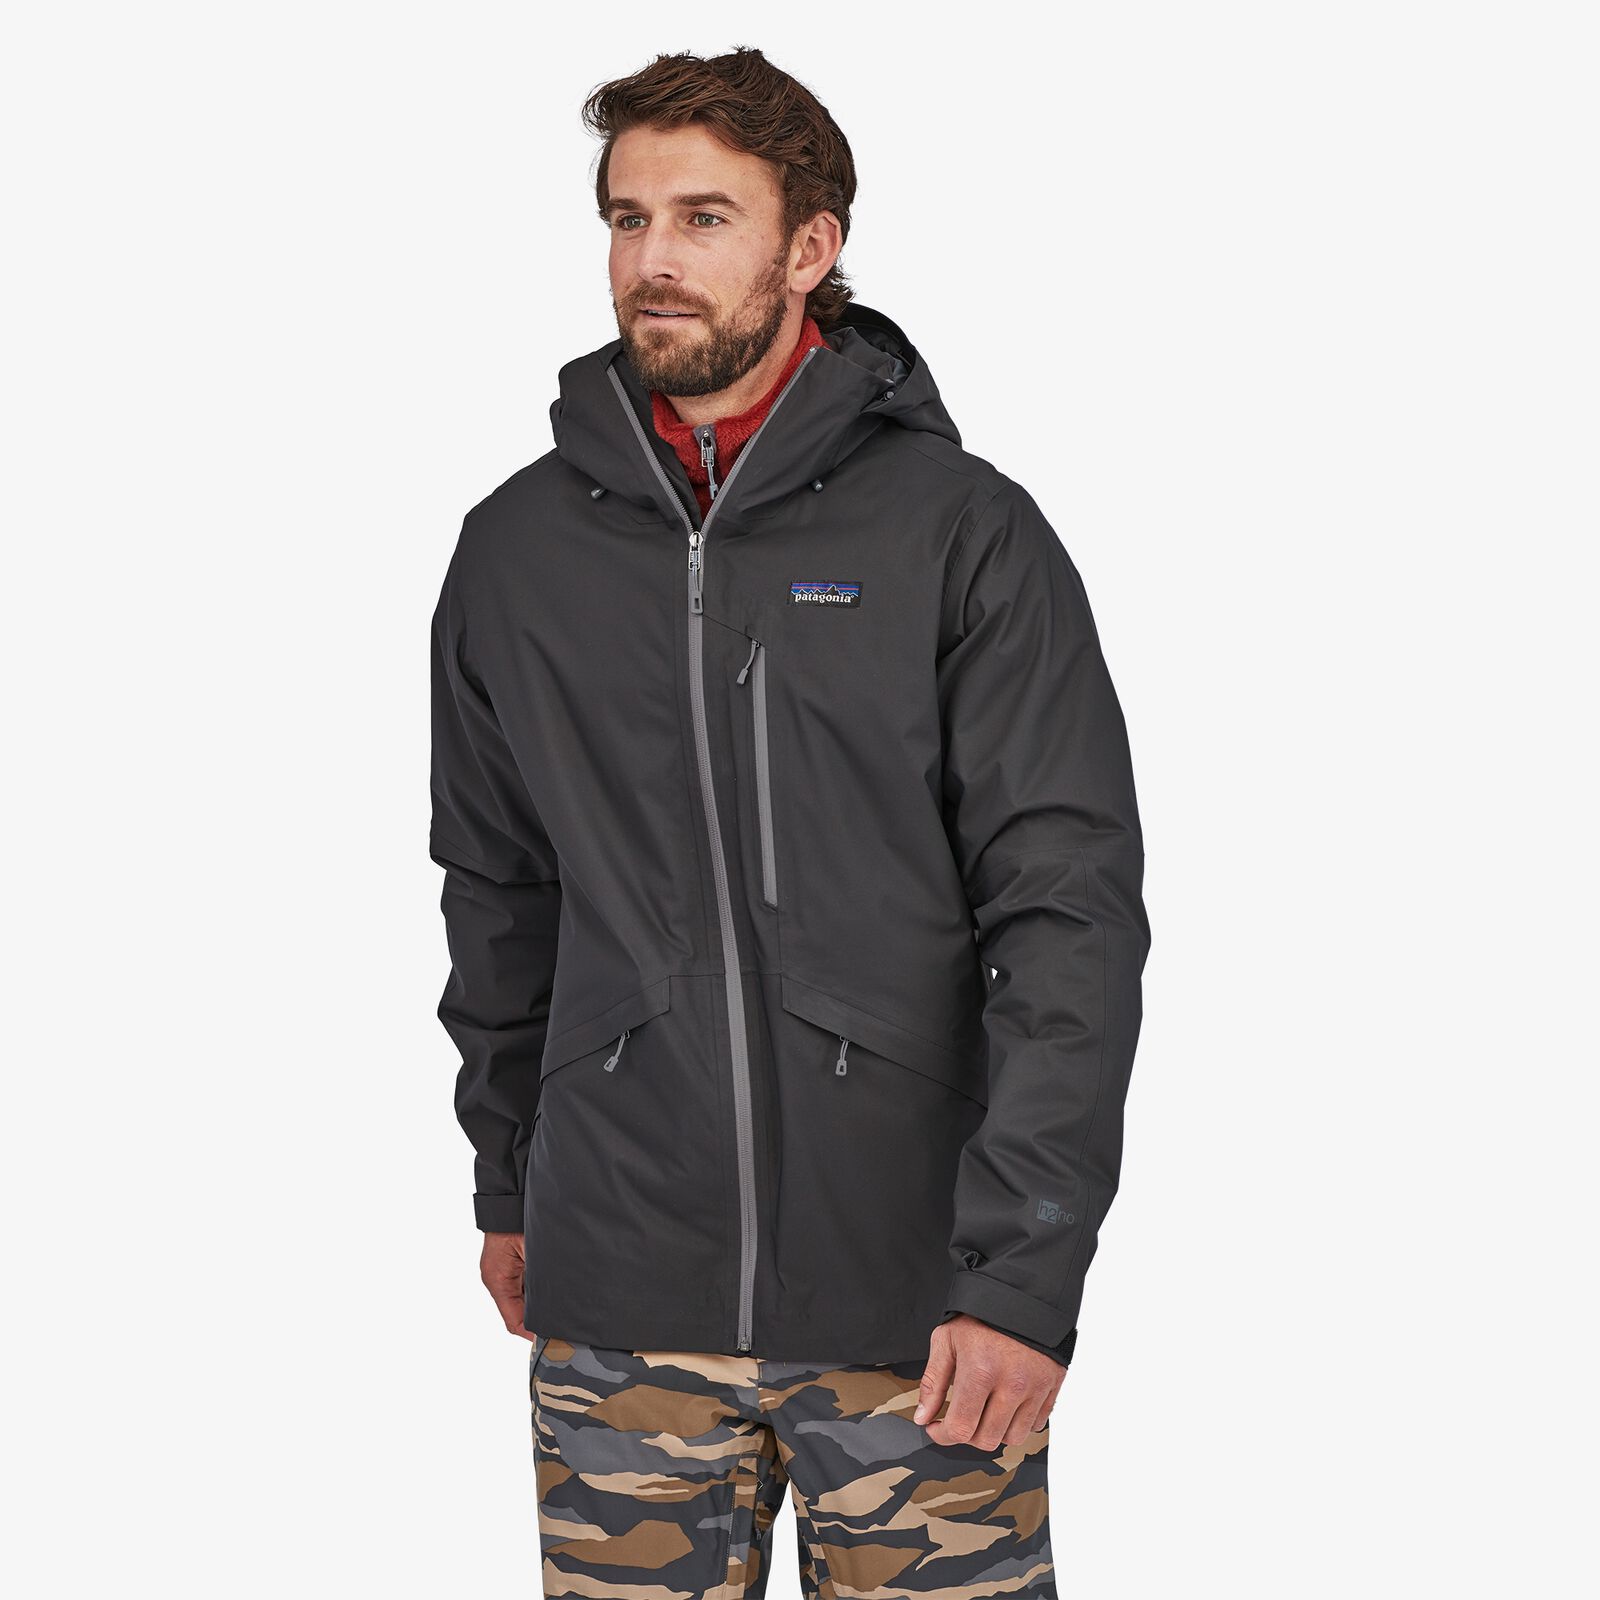 Patagonia Men's Insulated Ski/Snowboard Snowshot Jacket